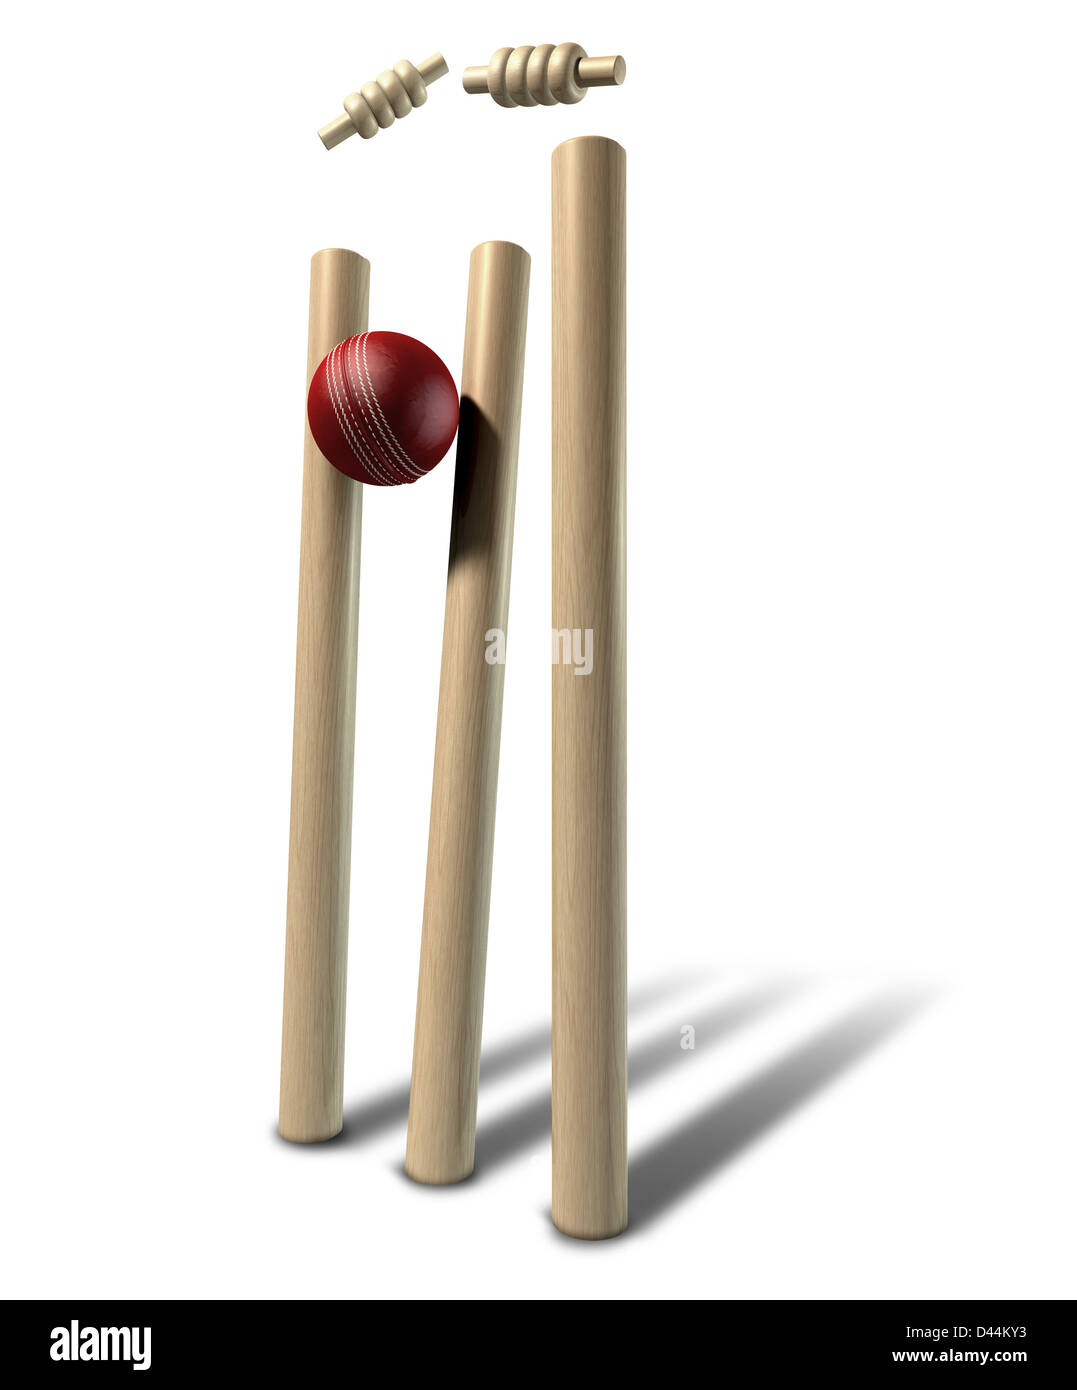 Ein rotes Leder Cricket Ballkontakt und beunruhigende hölzerne Cricket Wickets und Kautionen auf einem isolierten Hintergrund Stockfoto